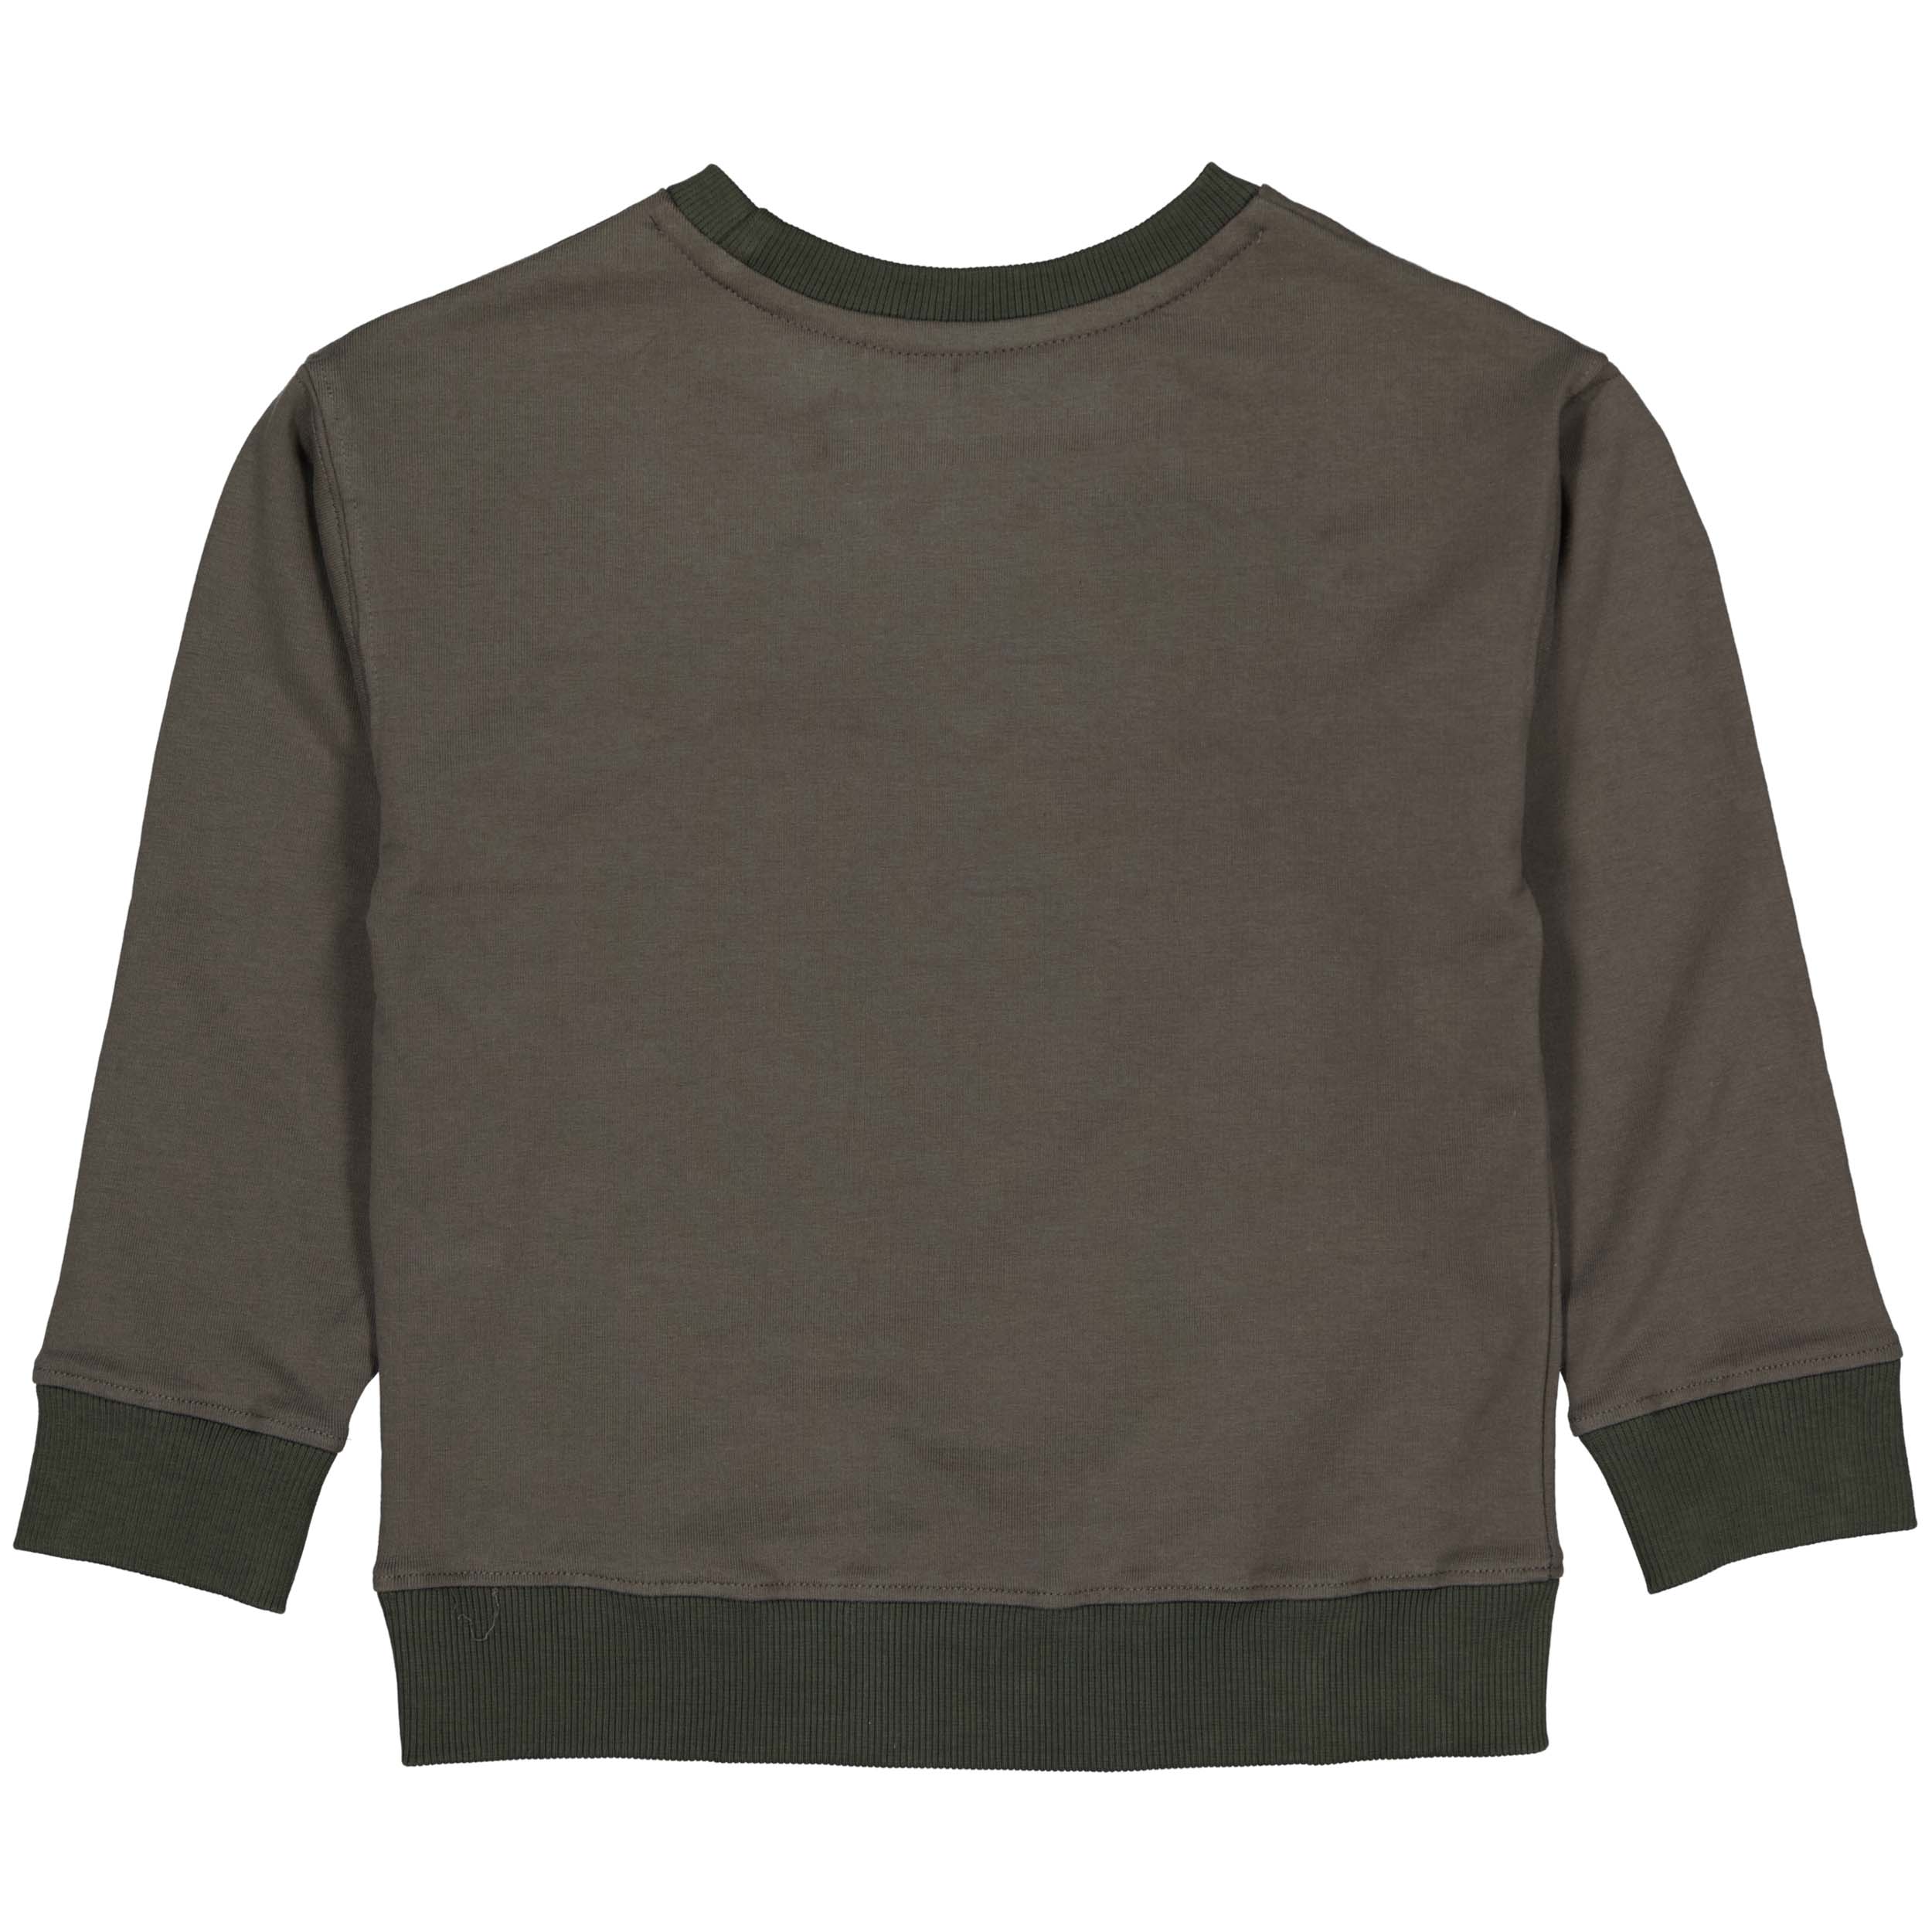 Jongens Sweater BERNTW222 van Little Levv in de kleur Green Greyish in maat 128.